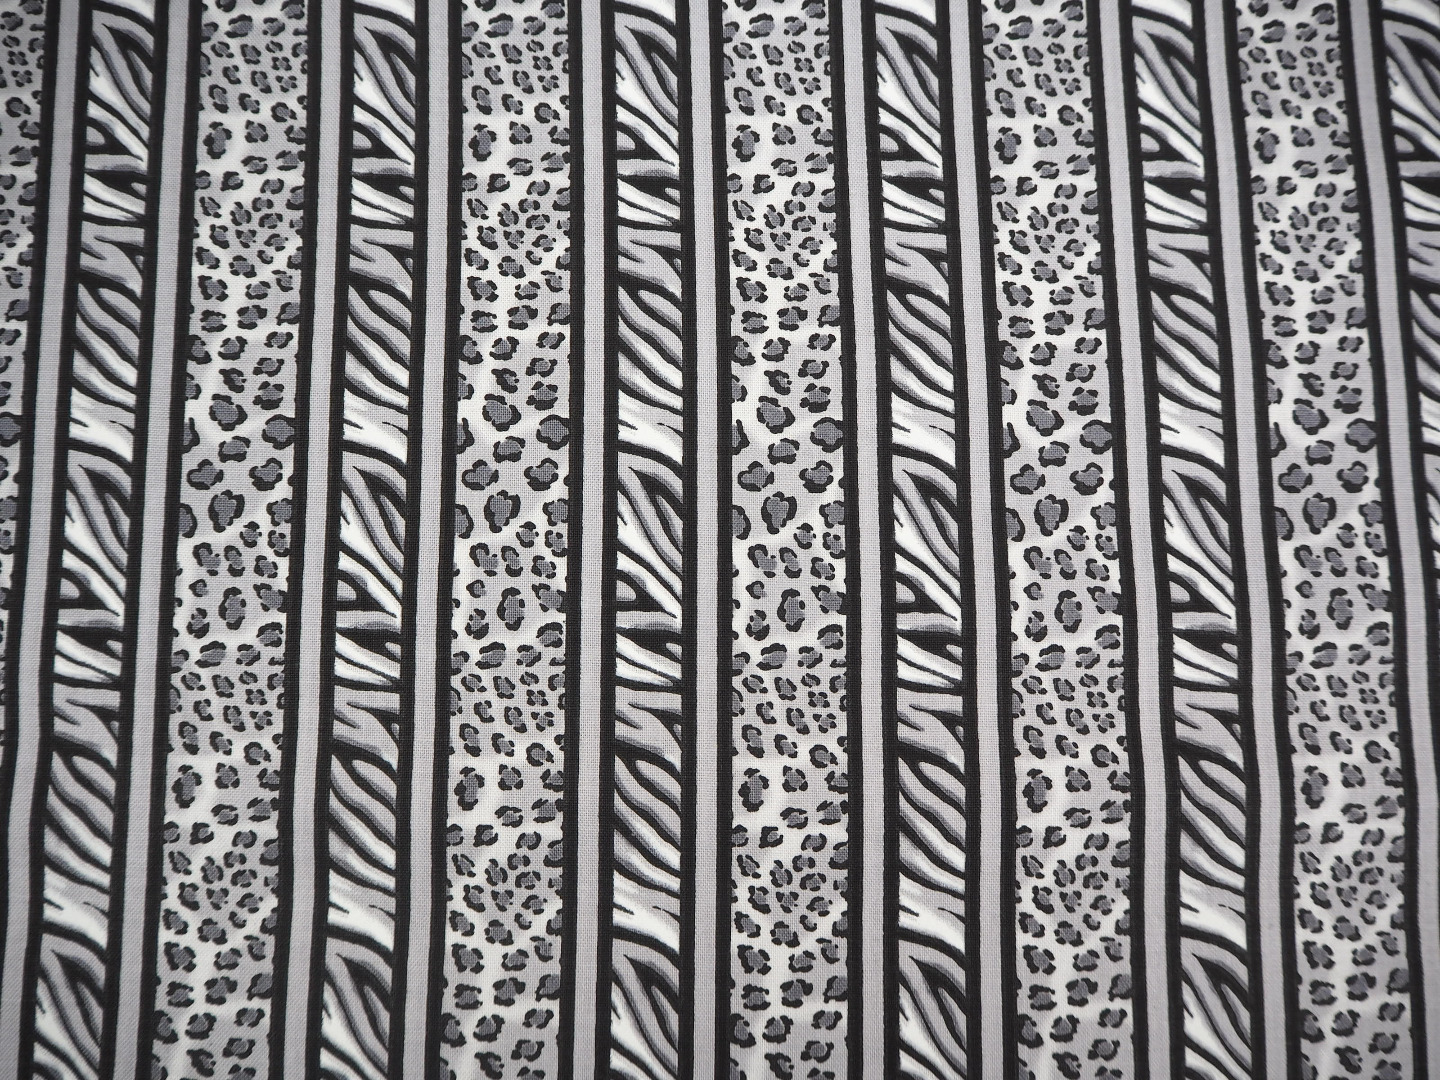 Animalprint Glam Girl Patchwork Stoff Patchworkstoff Meterware Leomuster Streifen schwarz weiß grau